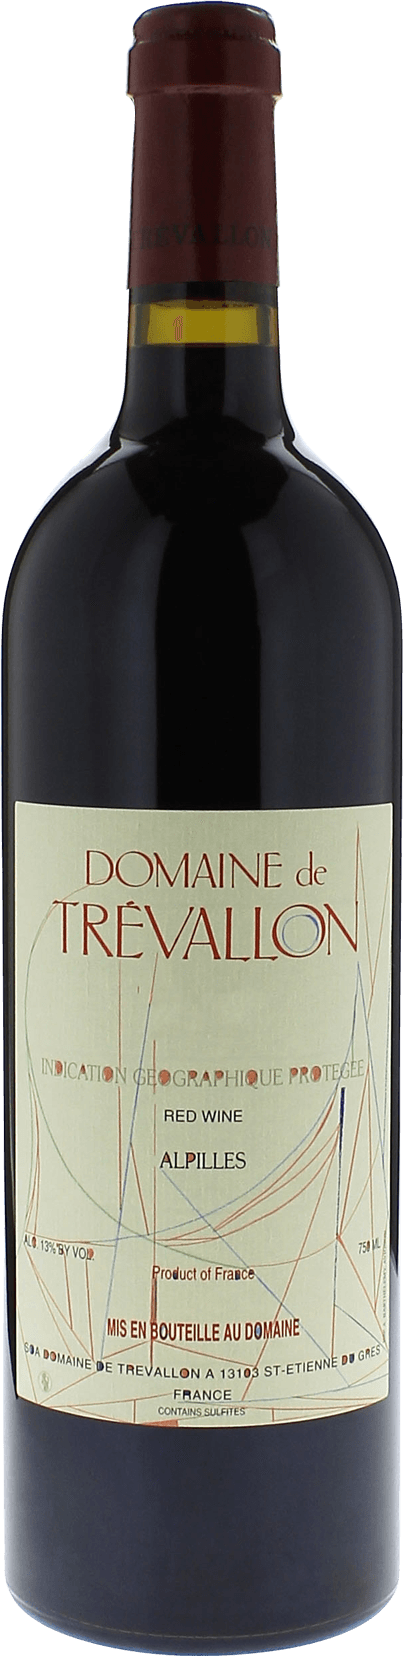 Domaine de trevallon rouge 2003  Vin de Pays, Provence